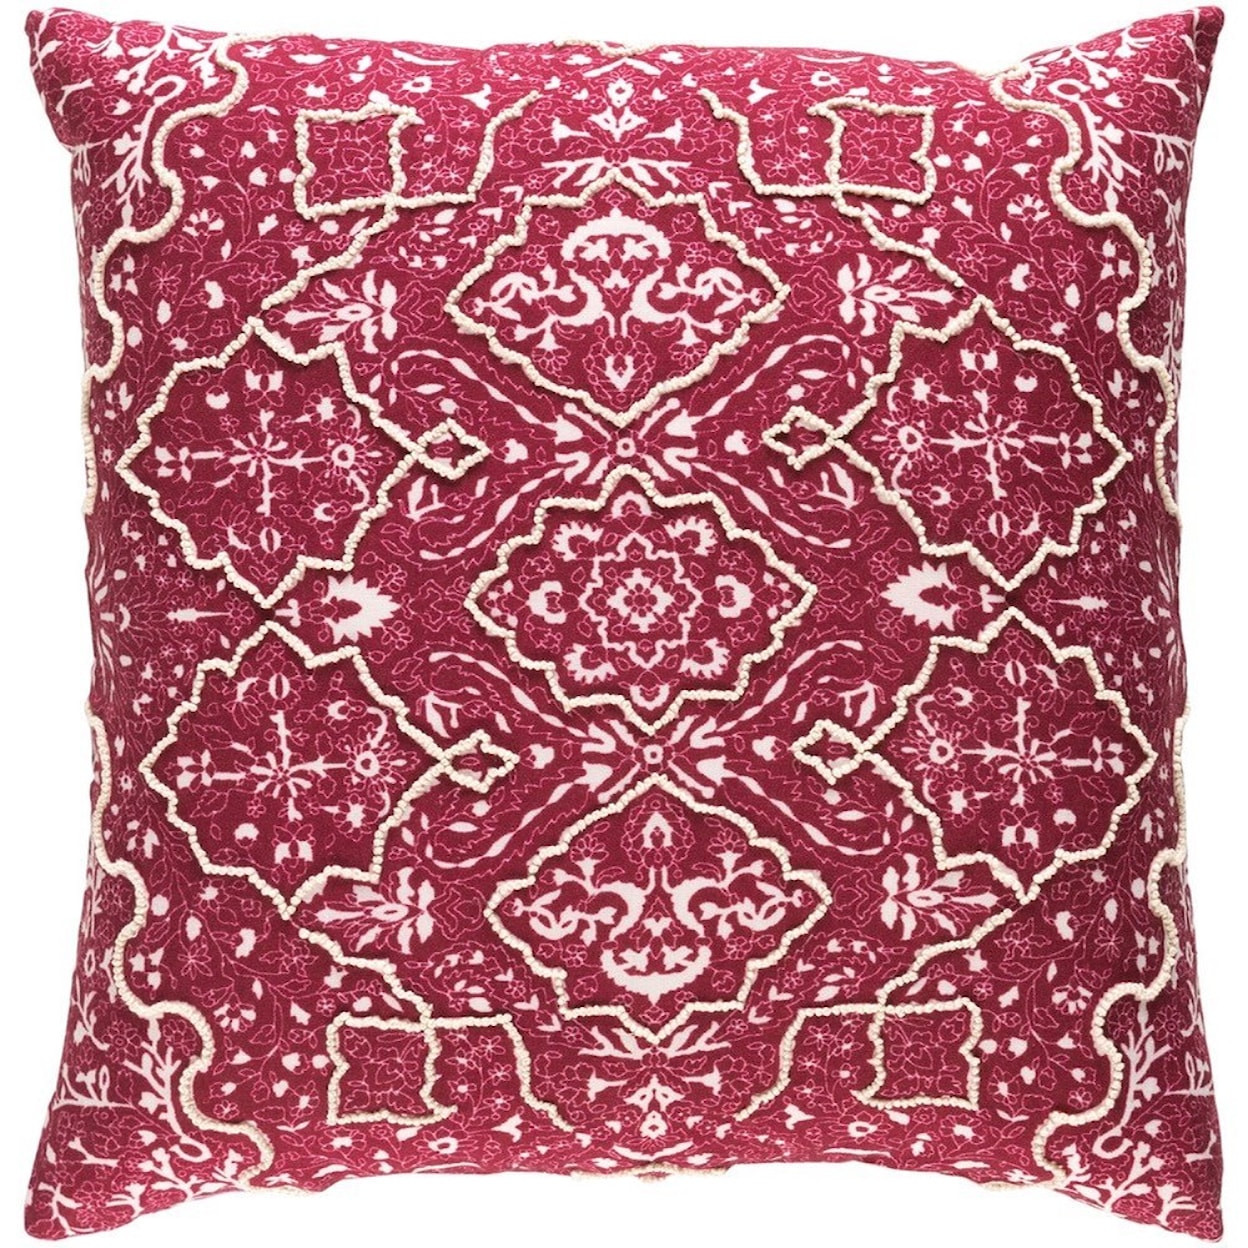 Surya Batik 18 x 18 x 4 Down Pillow Kit